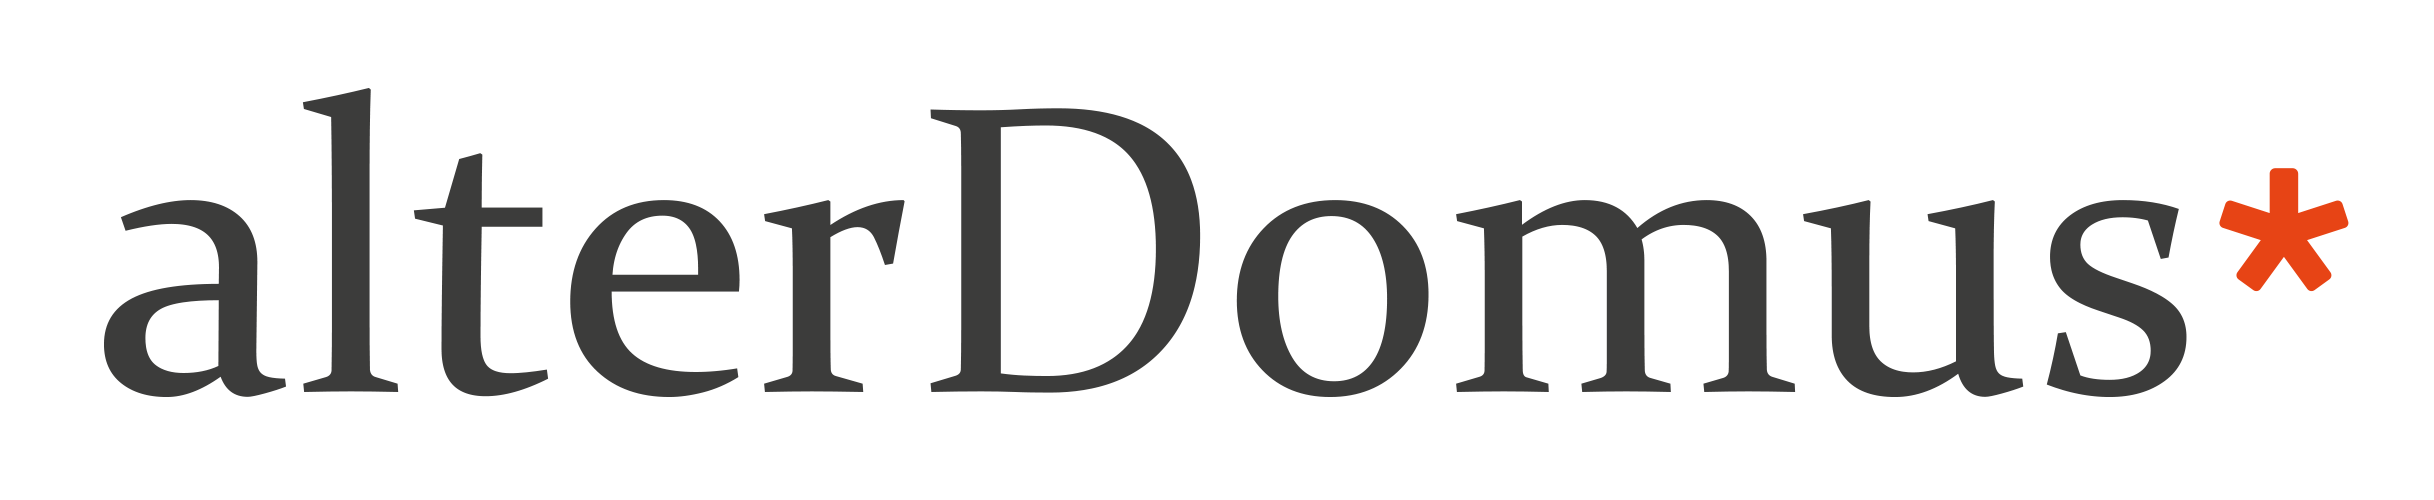 alterDomus logo